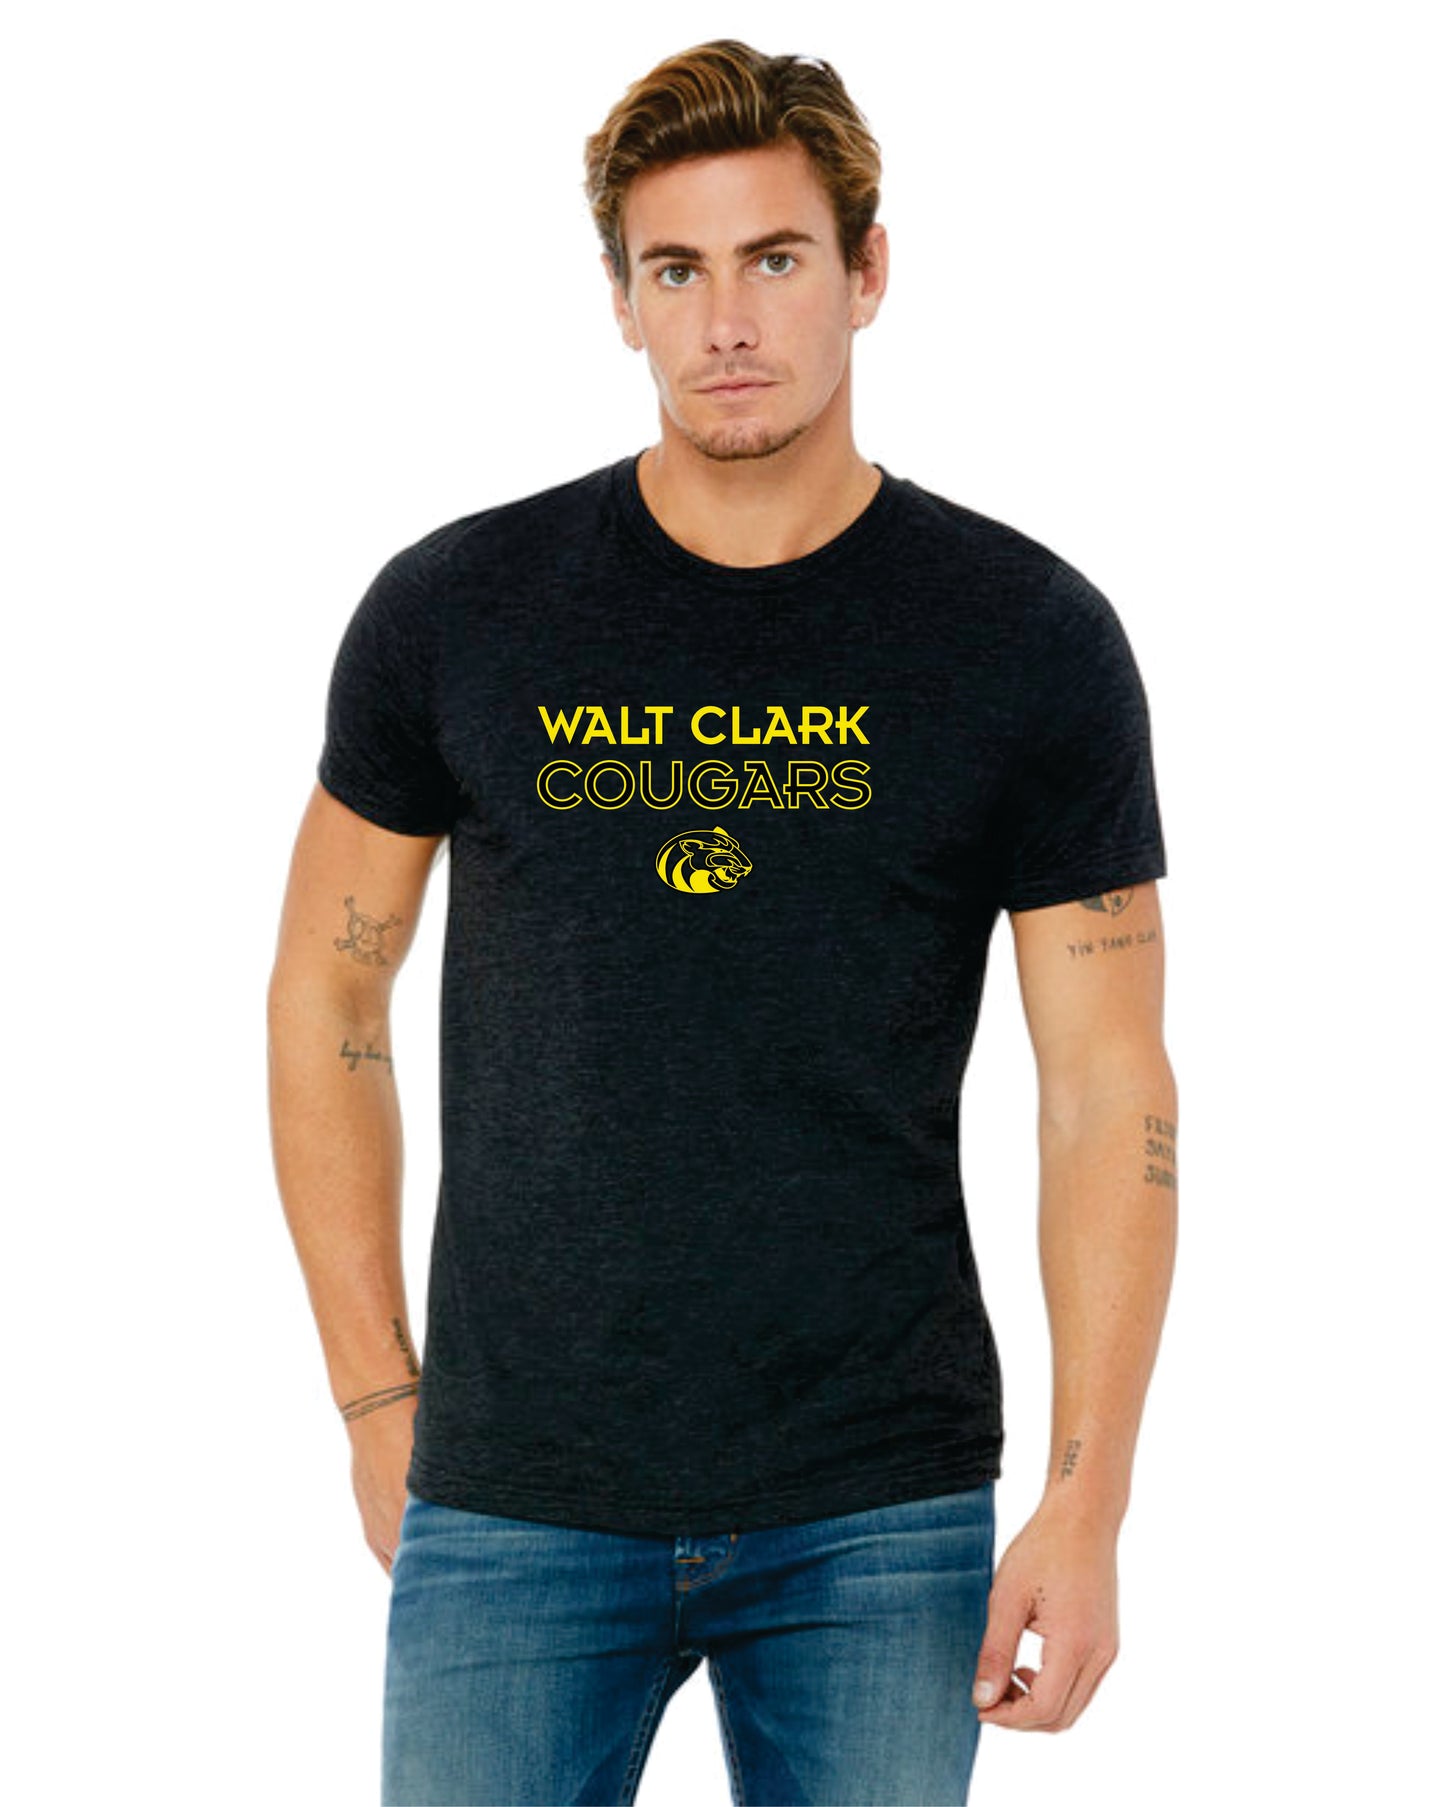 WCMS Walt Clark Cougars logo